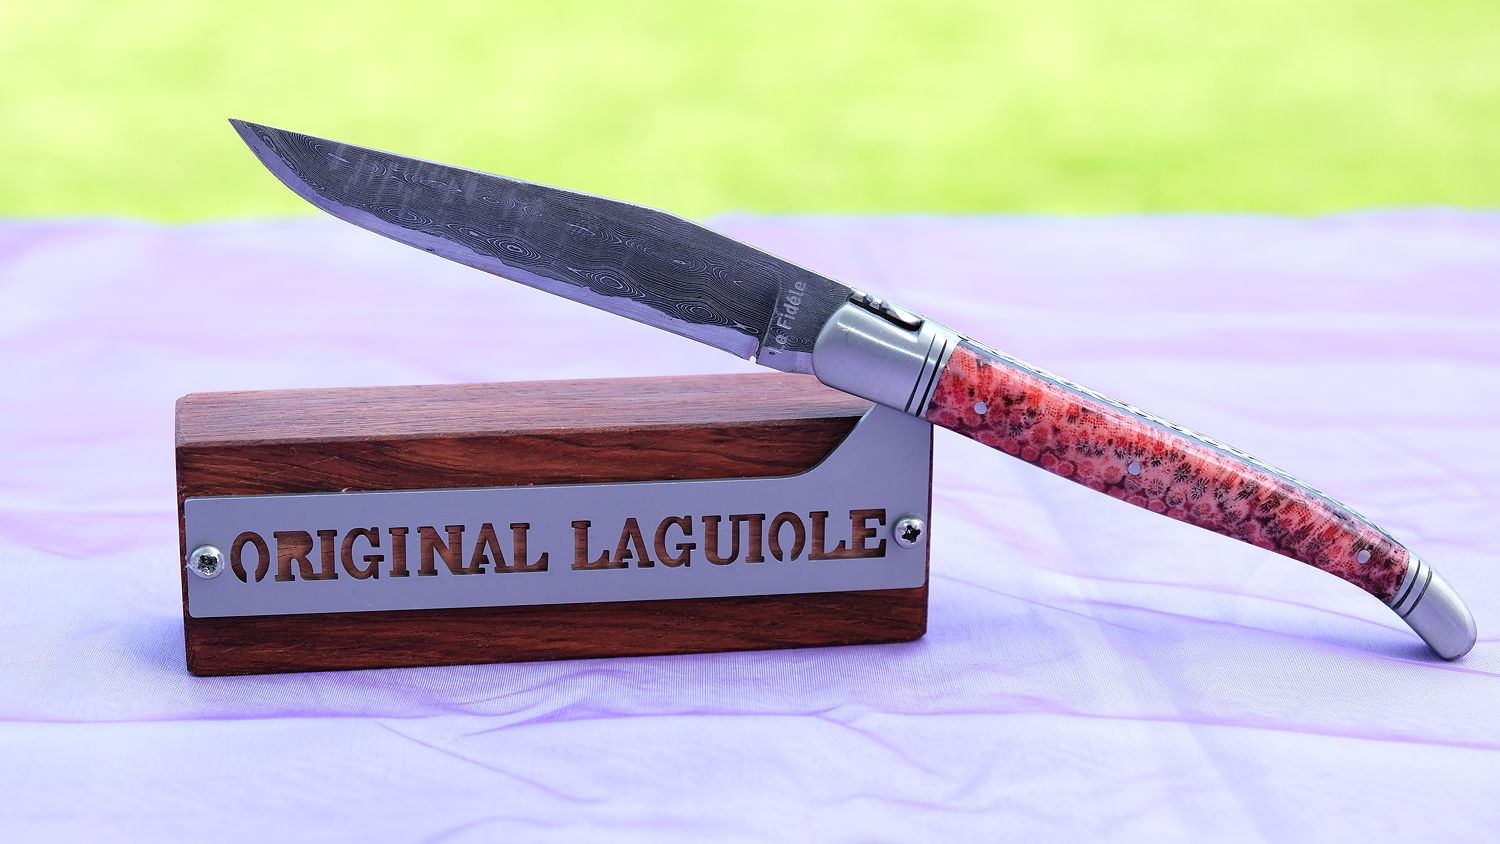 Original laguiole - Justine de Merges Collection: edler Messerständer für 1 Messer, Palisander aus Honduras